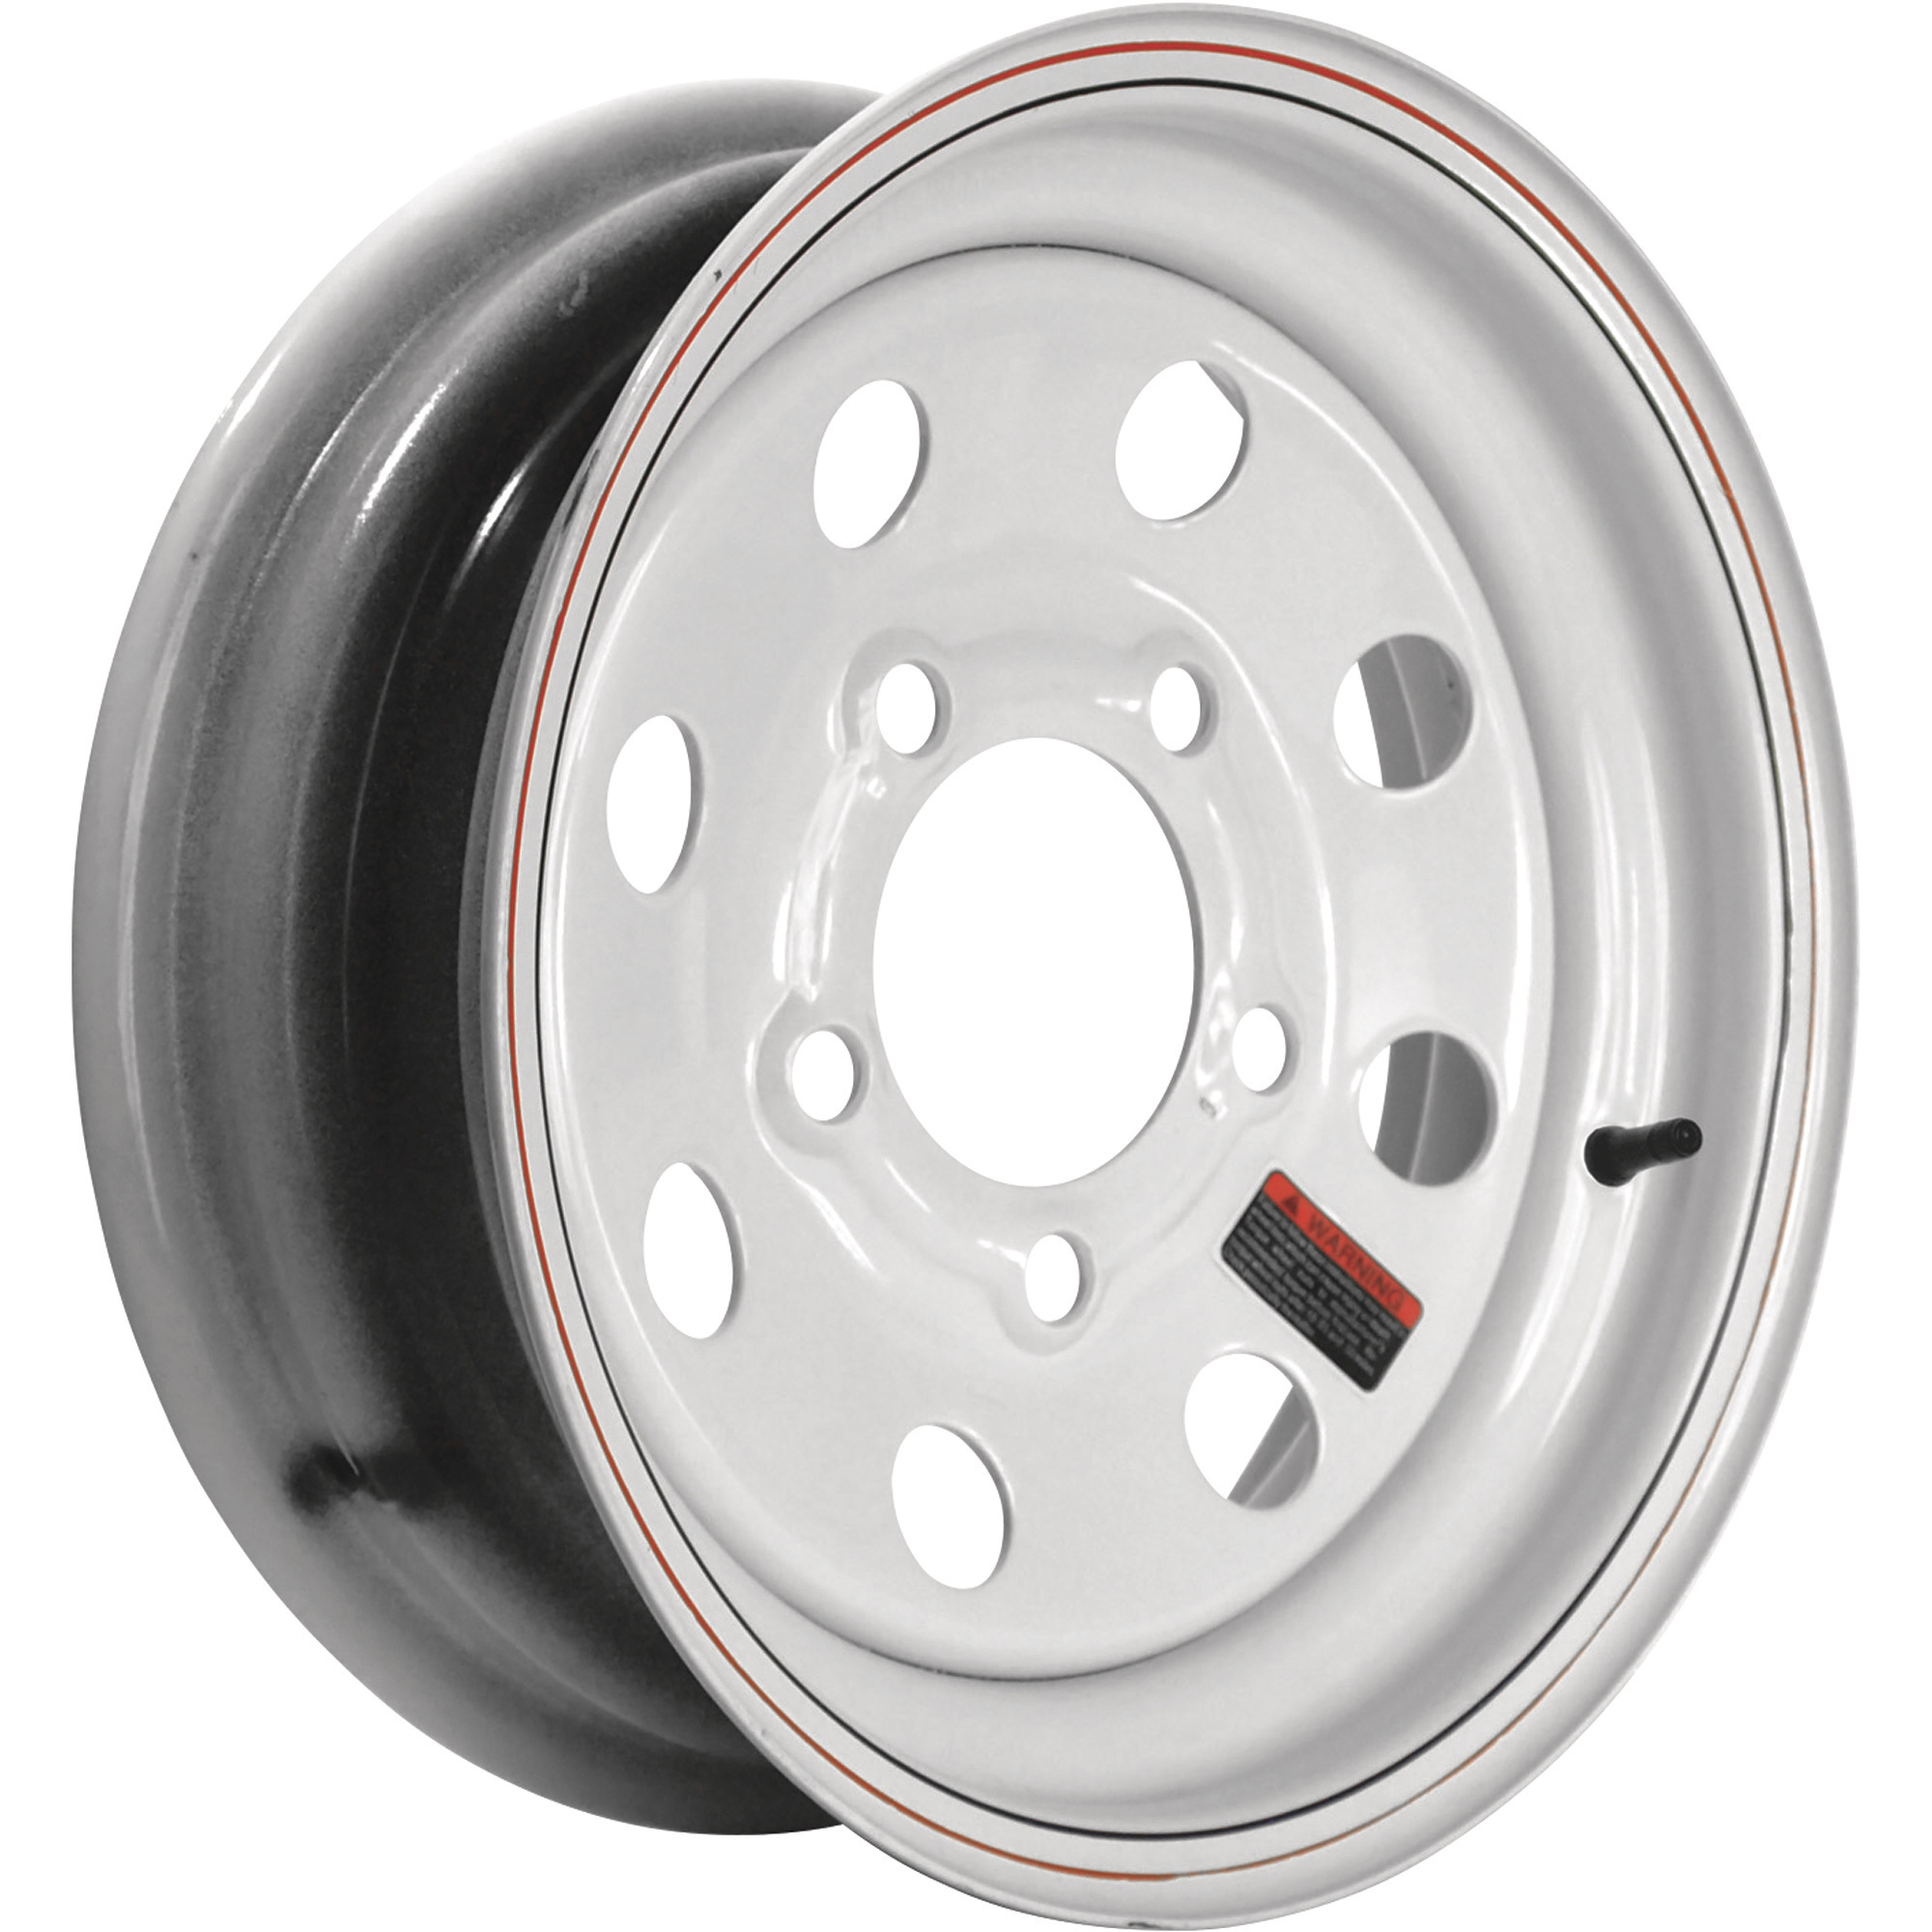 Martin Wheel 12Inch Modular Trailer Tire Wheel â Rim Only, Fits Tire Sizes 4.80 x 12, 5.30 x 12, 5-Hole, Model R-125-MM-V